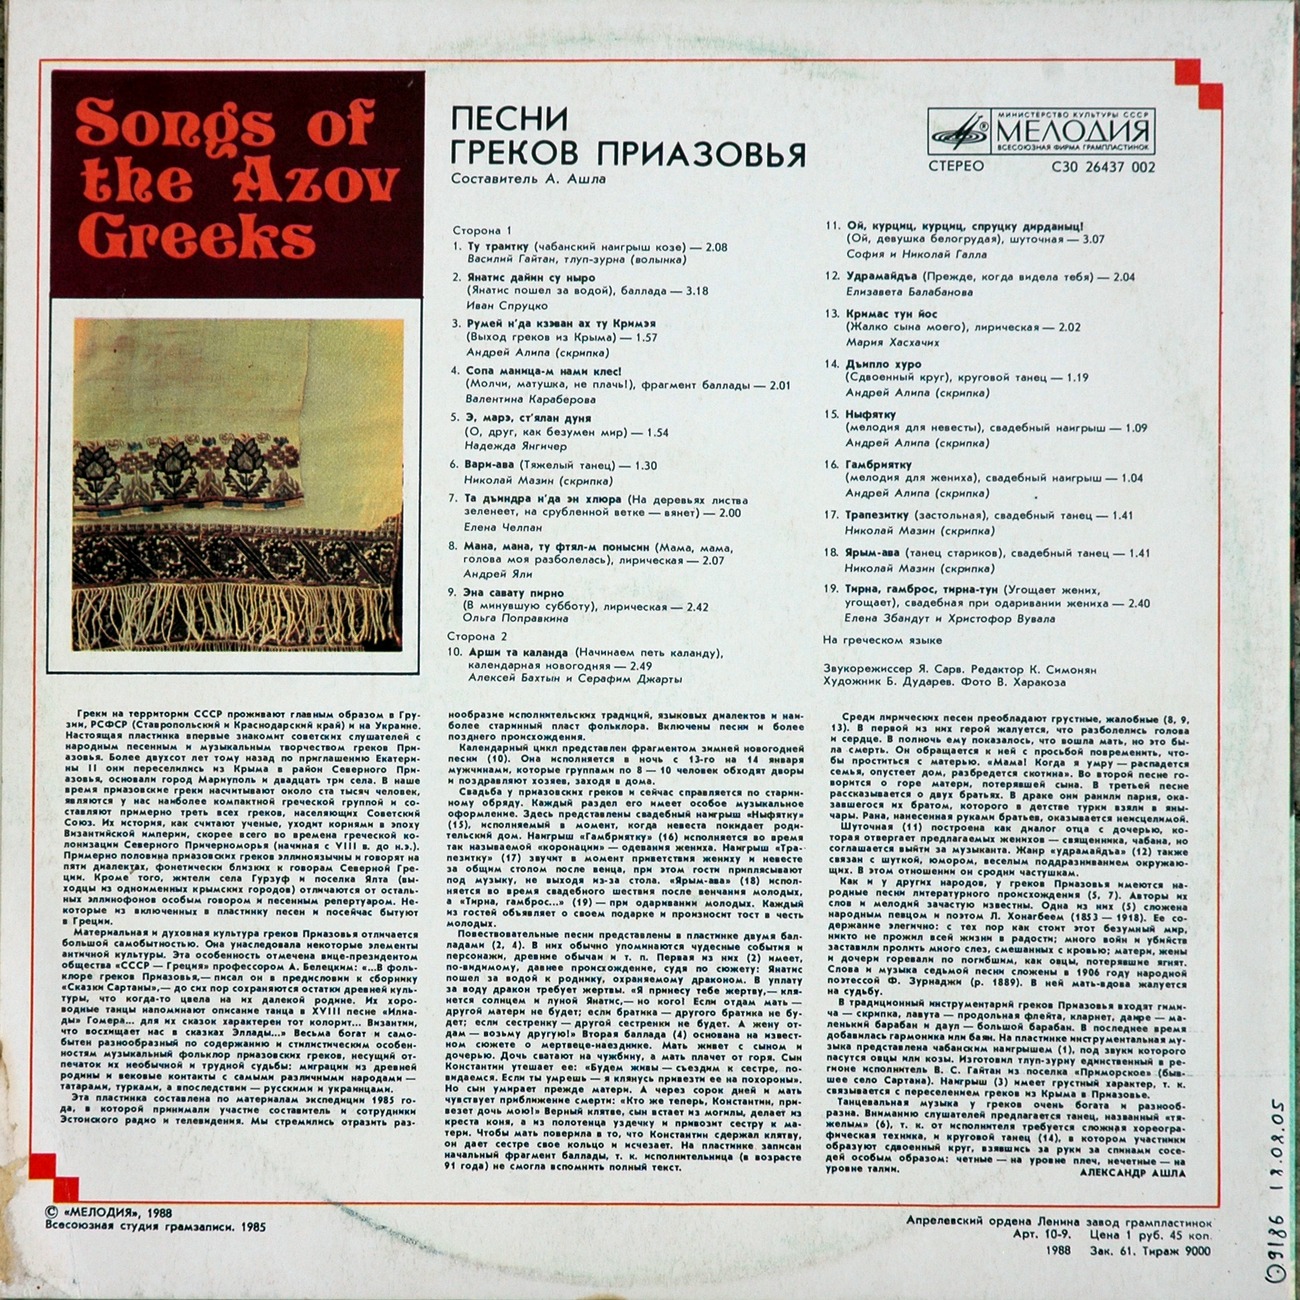 ПЕСНИ ГРЕКОВ ПРИАЗОВЬЯ (Τα τραγούδια των Ελλήνων της Αζοφικής)